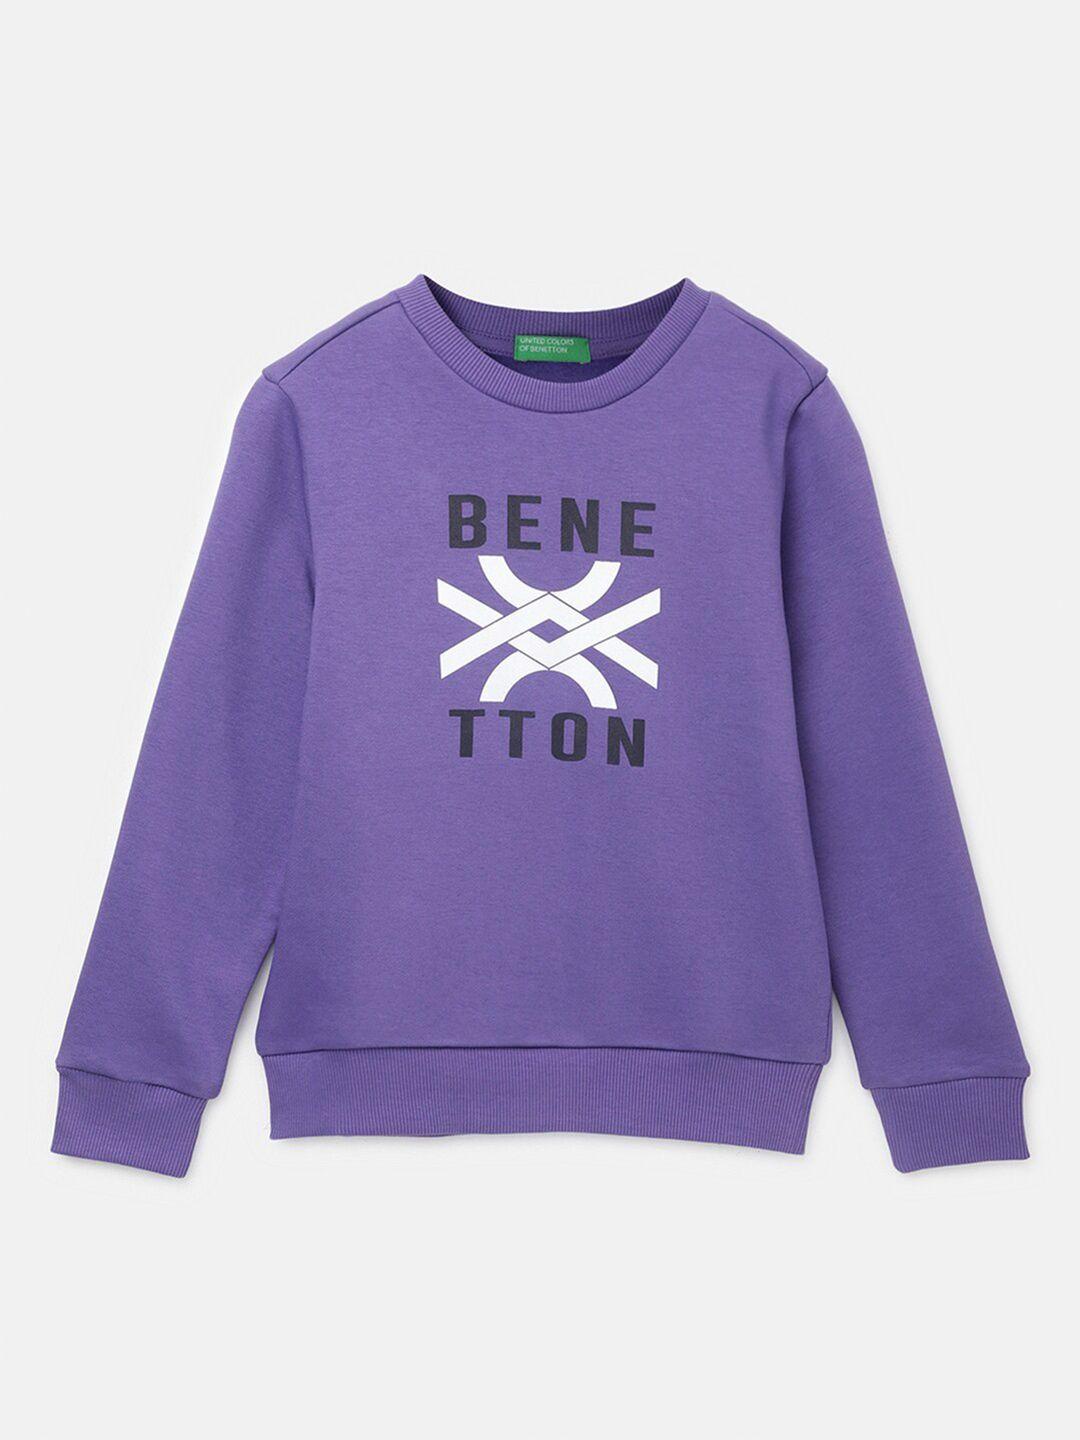 united colors of benetton boys typography printed sweatshirt